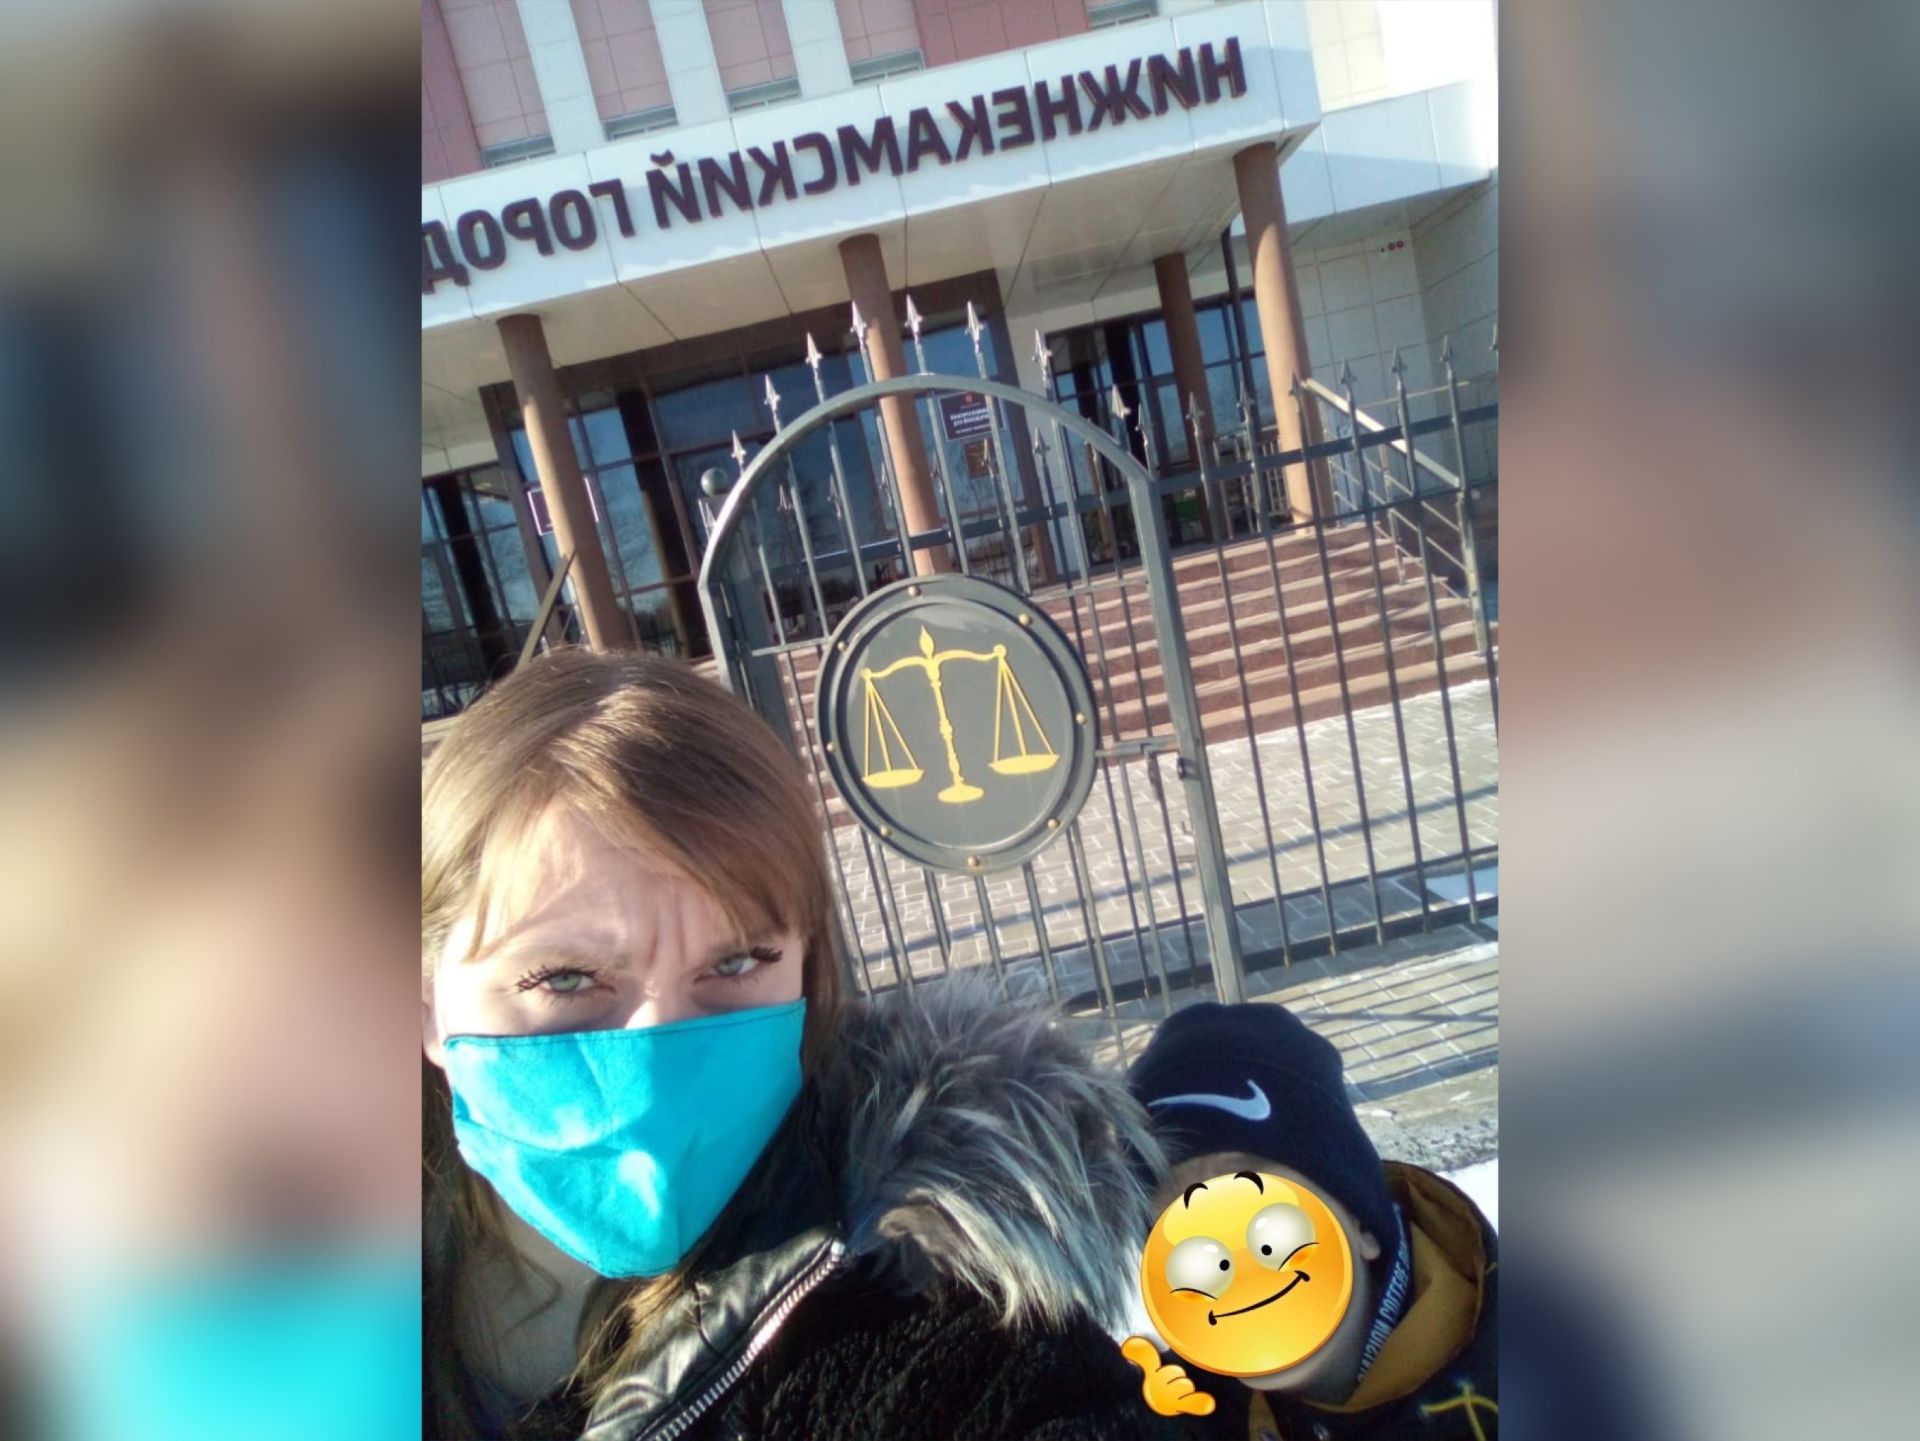 Агина Алтынбаева лишила отца своих детей родительских прав в&nbsp;Нижнекамском суде